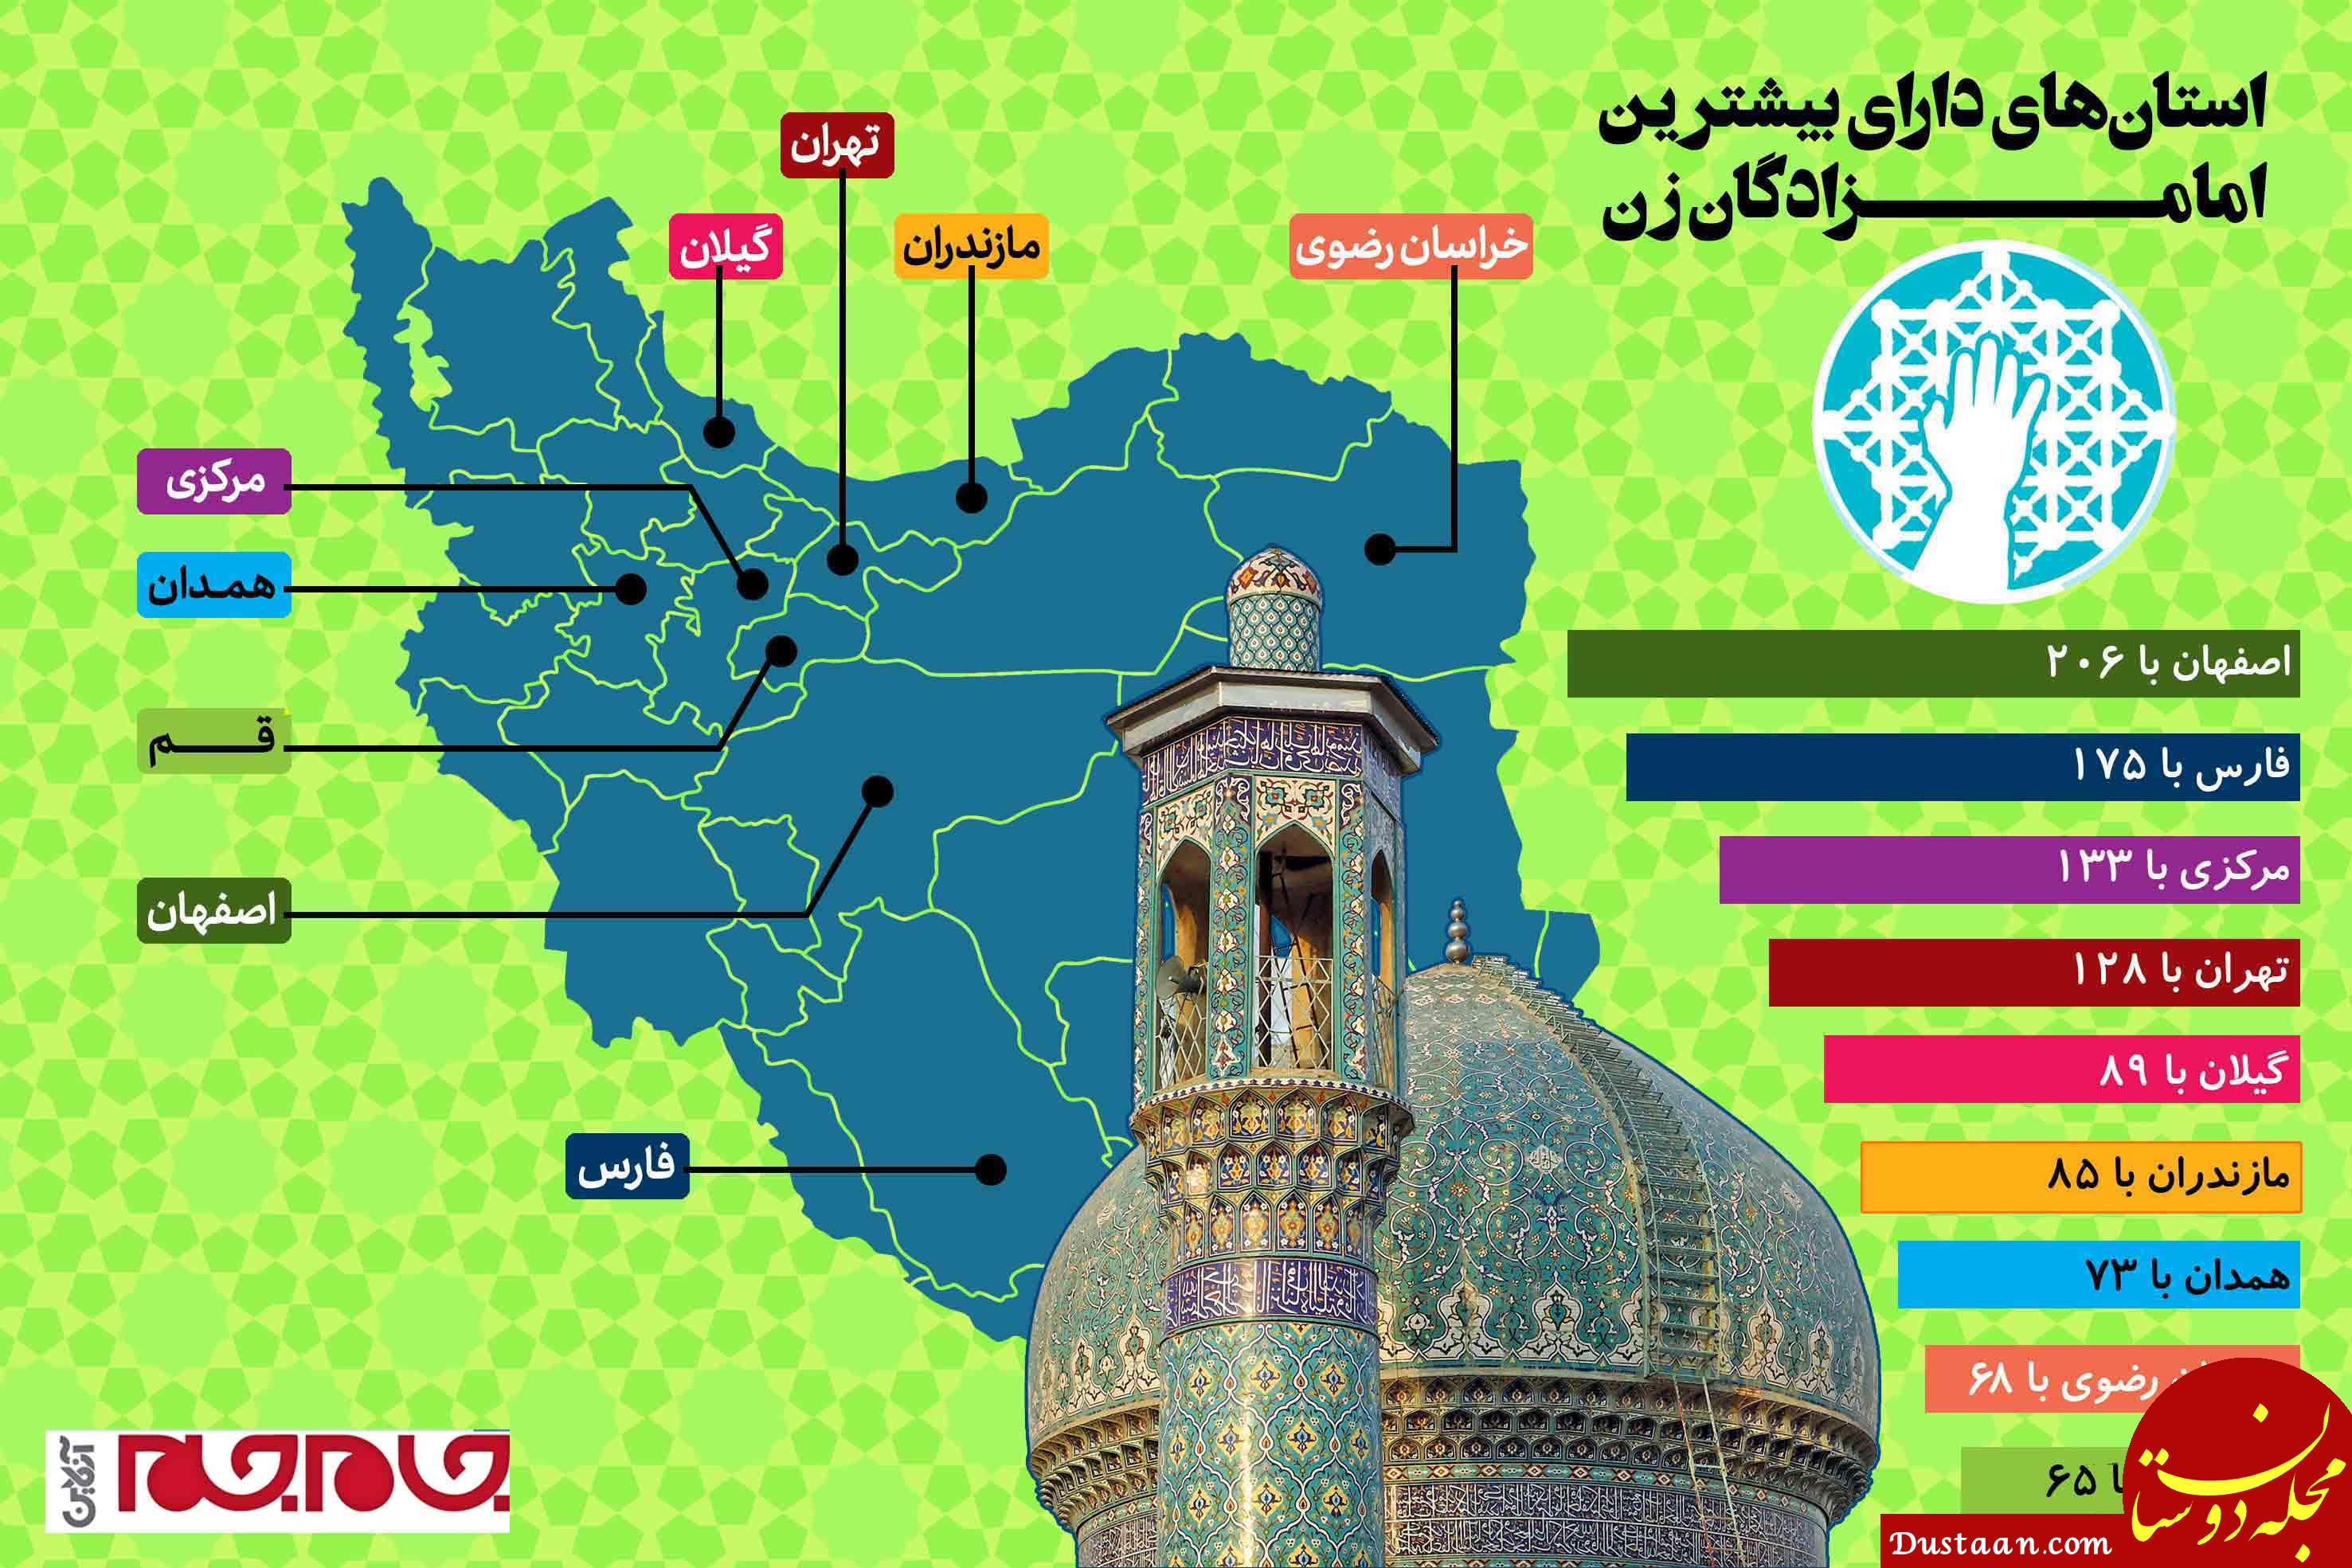 www.dustaan.com-ایران چند امامزاده زن دارد؟